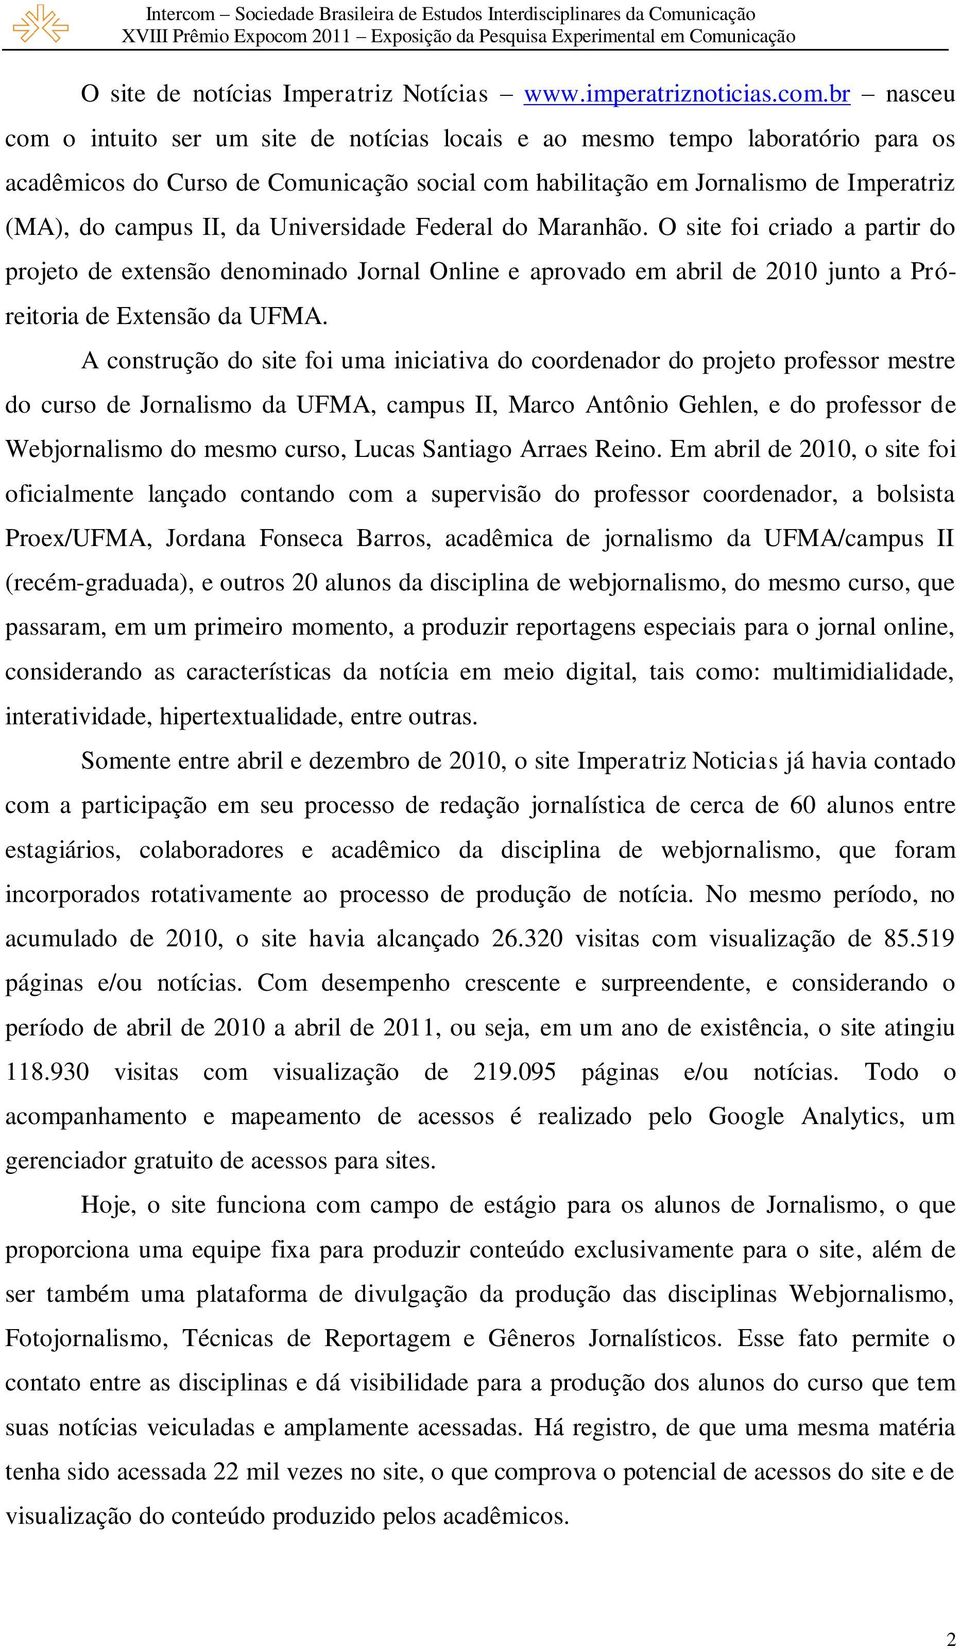 da Universidade Federal do Maranhão. O site foi criado a partir do projeto de extensão denominado Jornal Online e aprovado em abril de 2010 junto a Próreitoria de Extensão da UFMA.